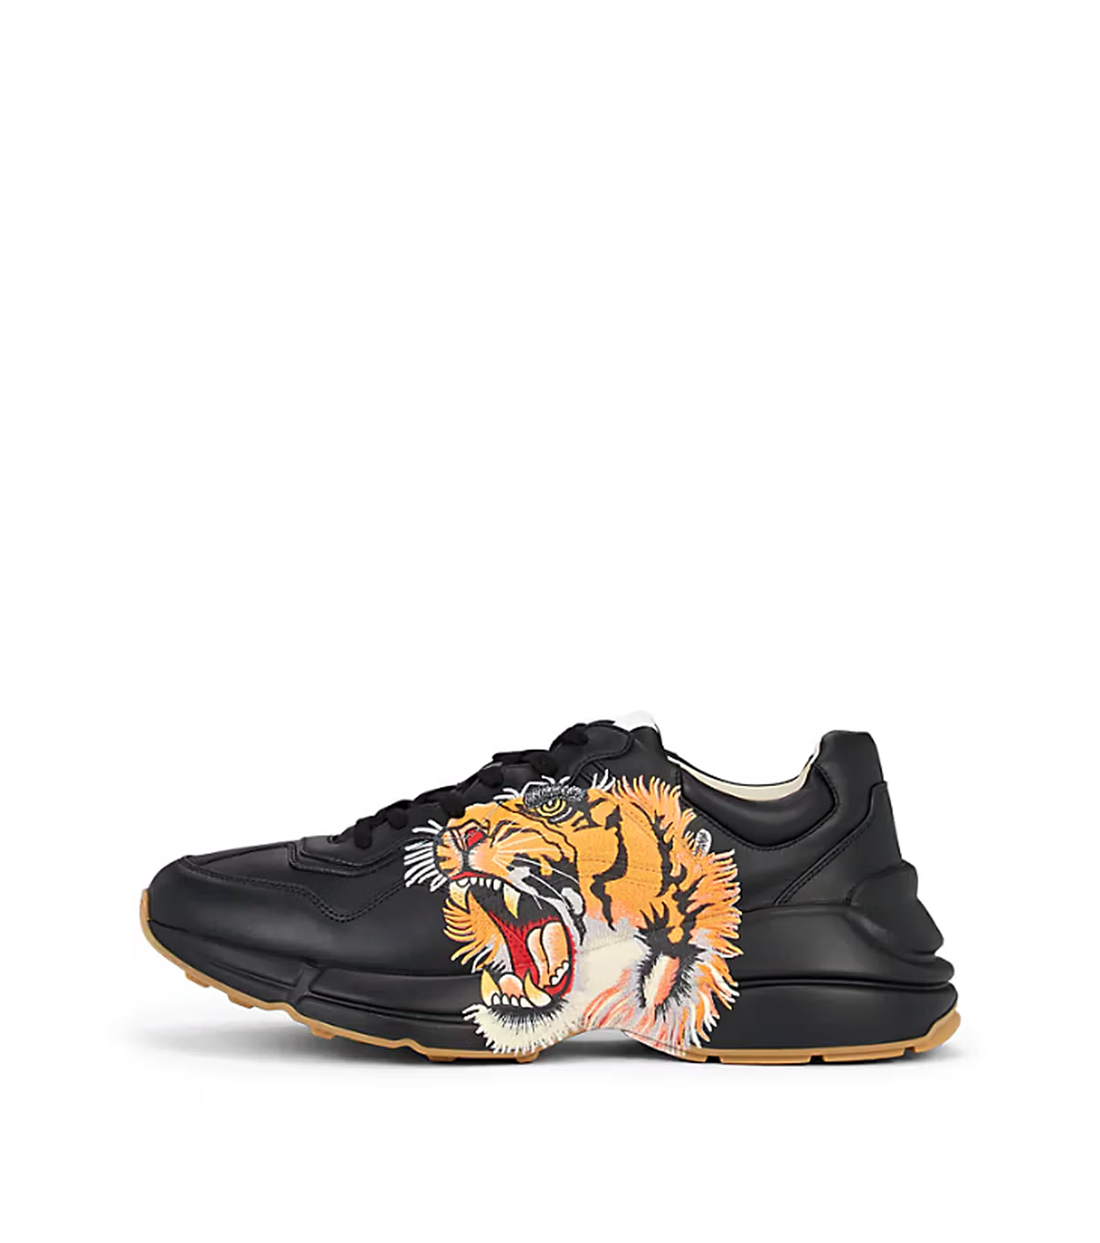 Gucci Rhyton with Tiger Print